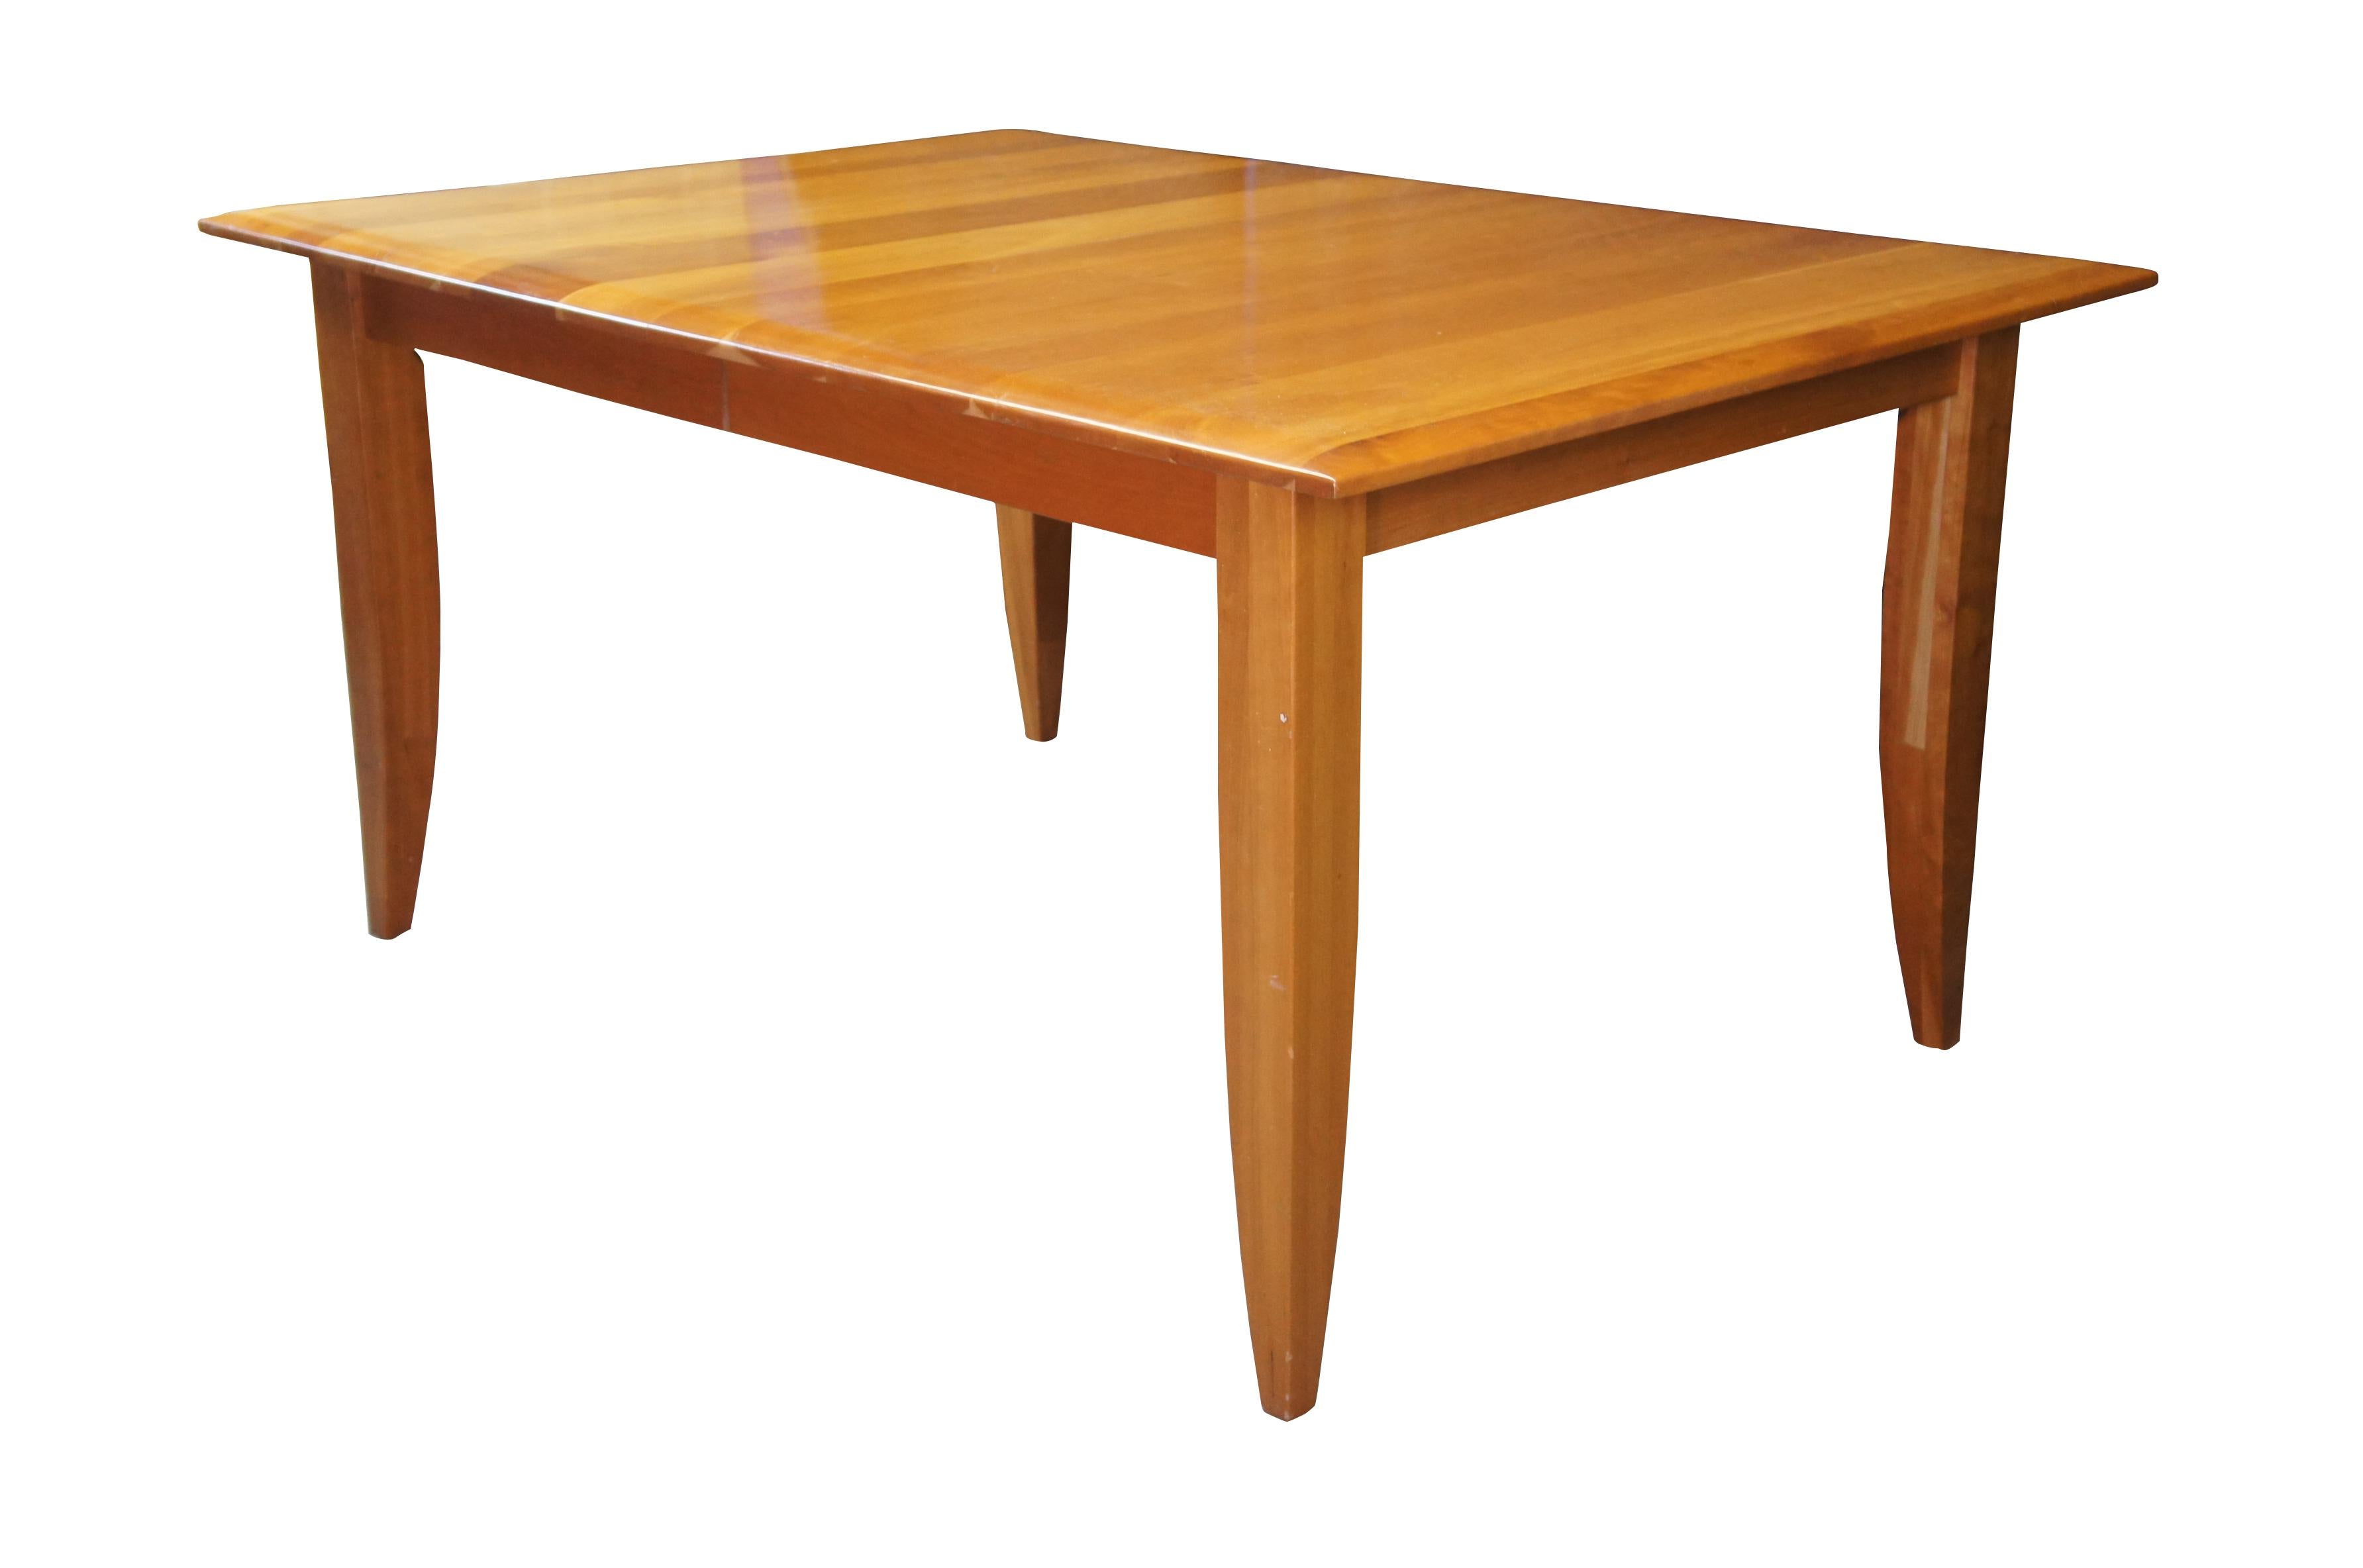 Une belle table de salle à manger de style Shaker ou Amish en cerisier italien Arhaus.  Elle présente un grand plateau rectangulaire avec des planches perpendiculaires au plateau.  La table est soutenue par des pieds carrés qui se rétrécissent vers